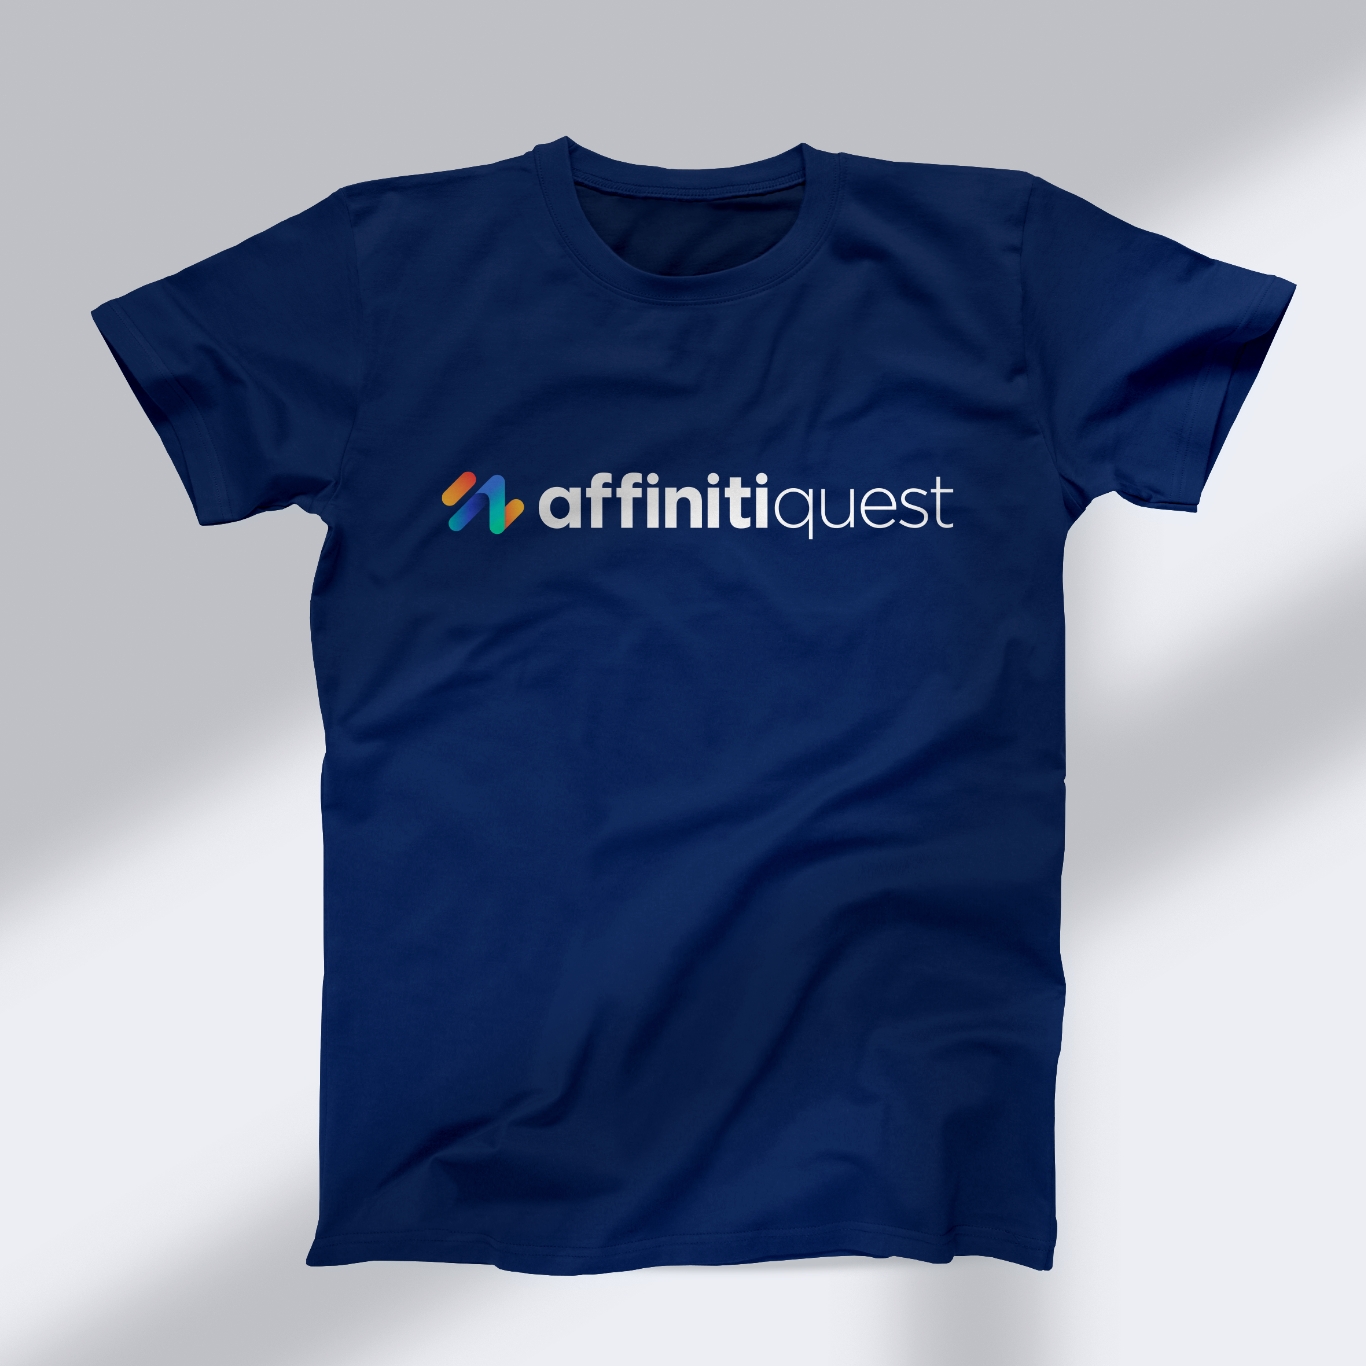 AffinitiQuest branded shirt